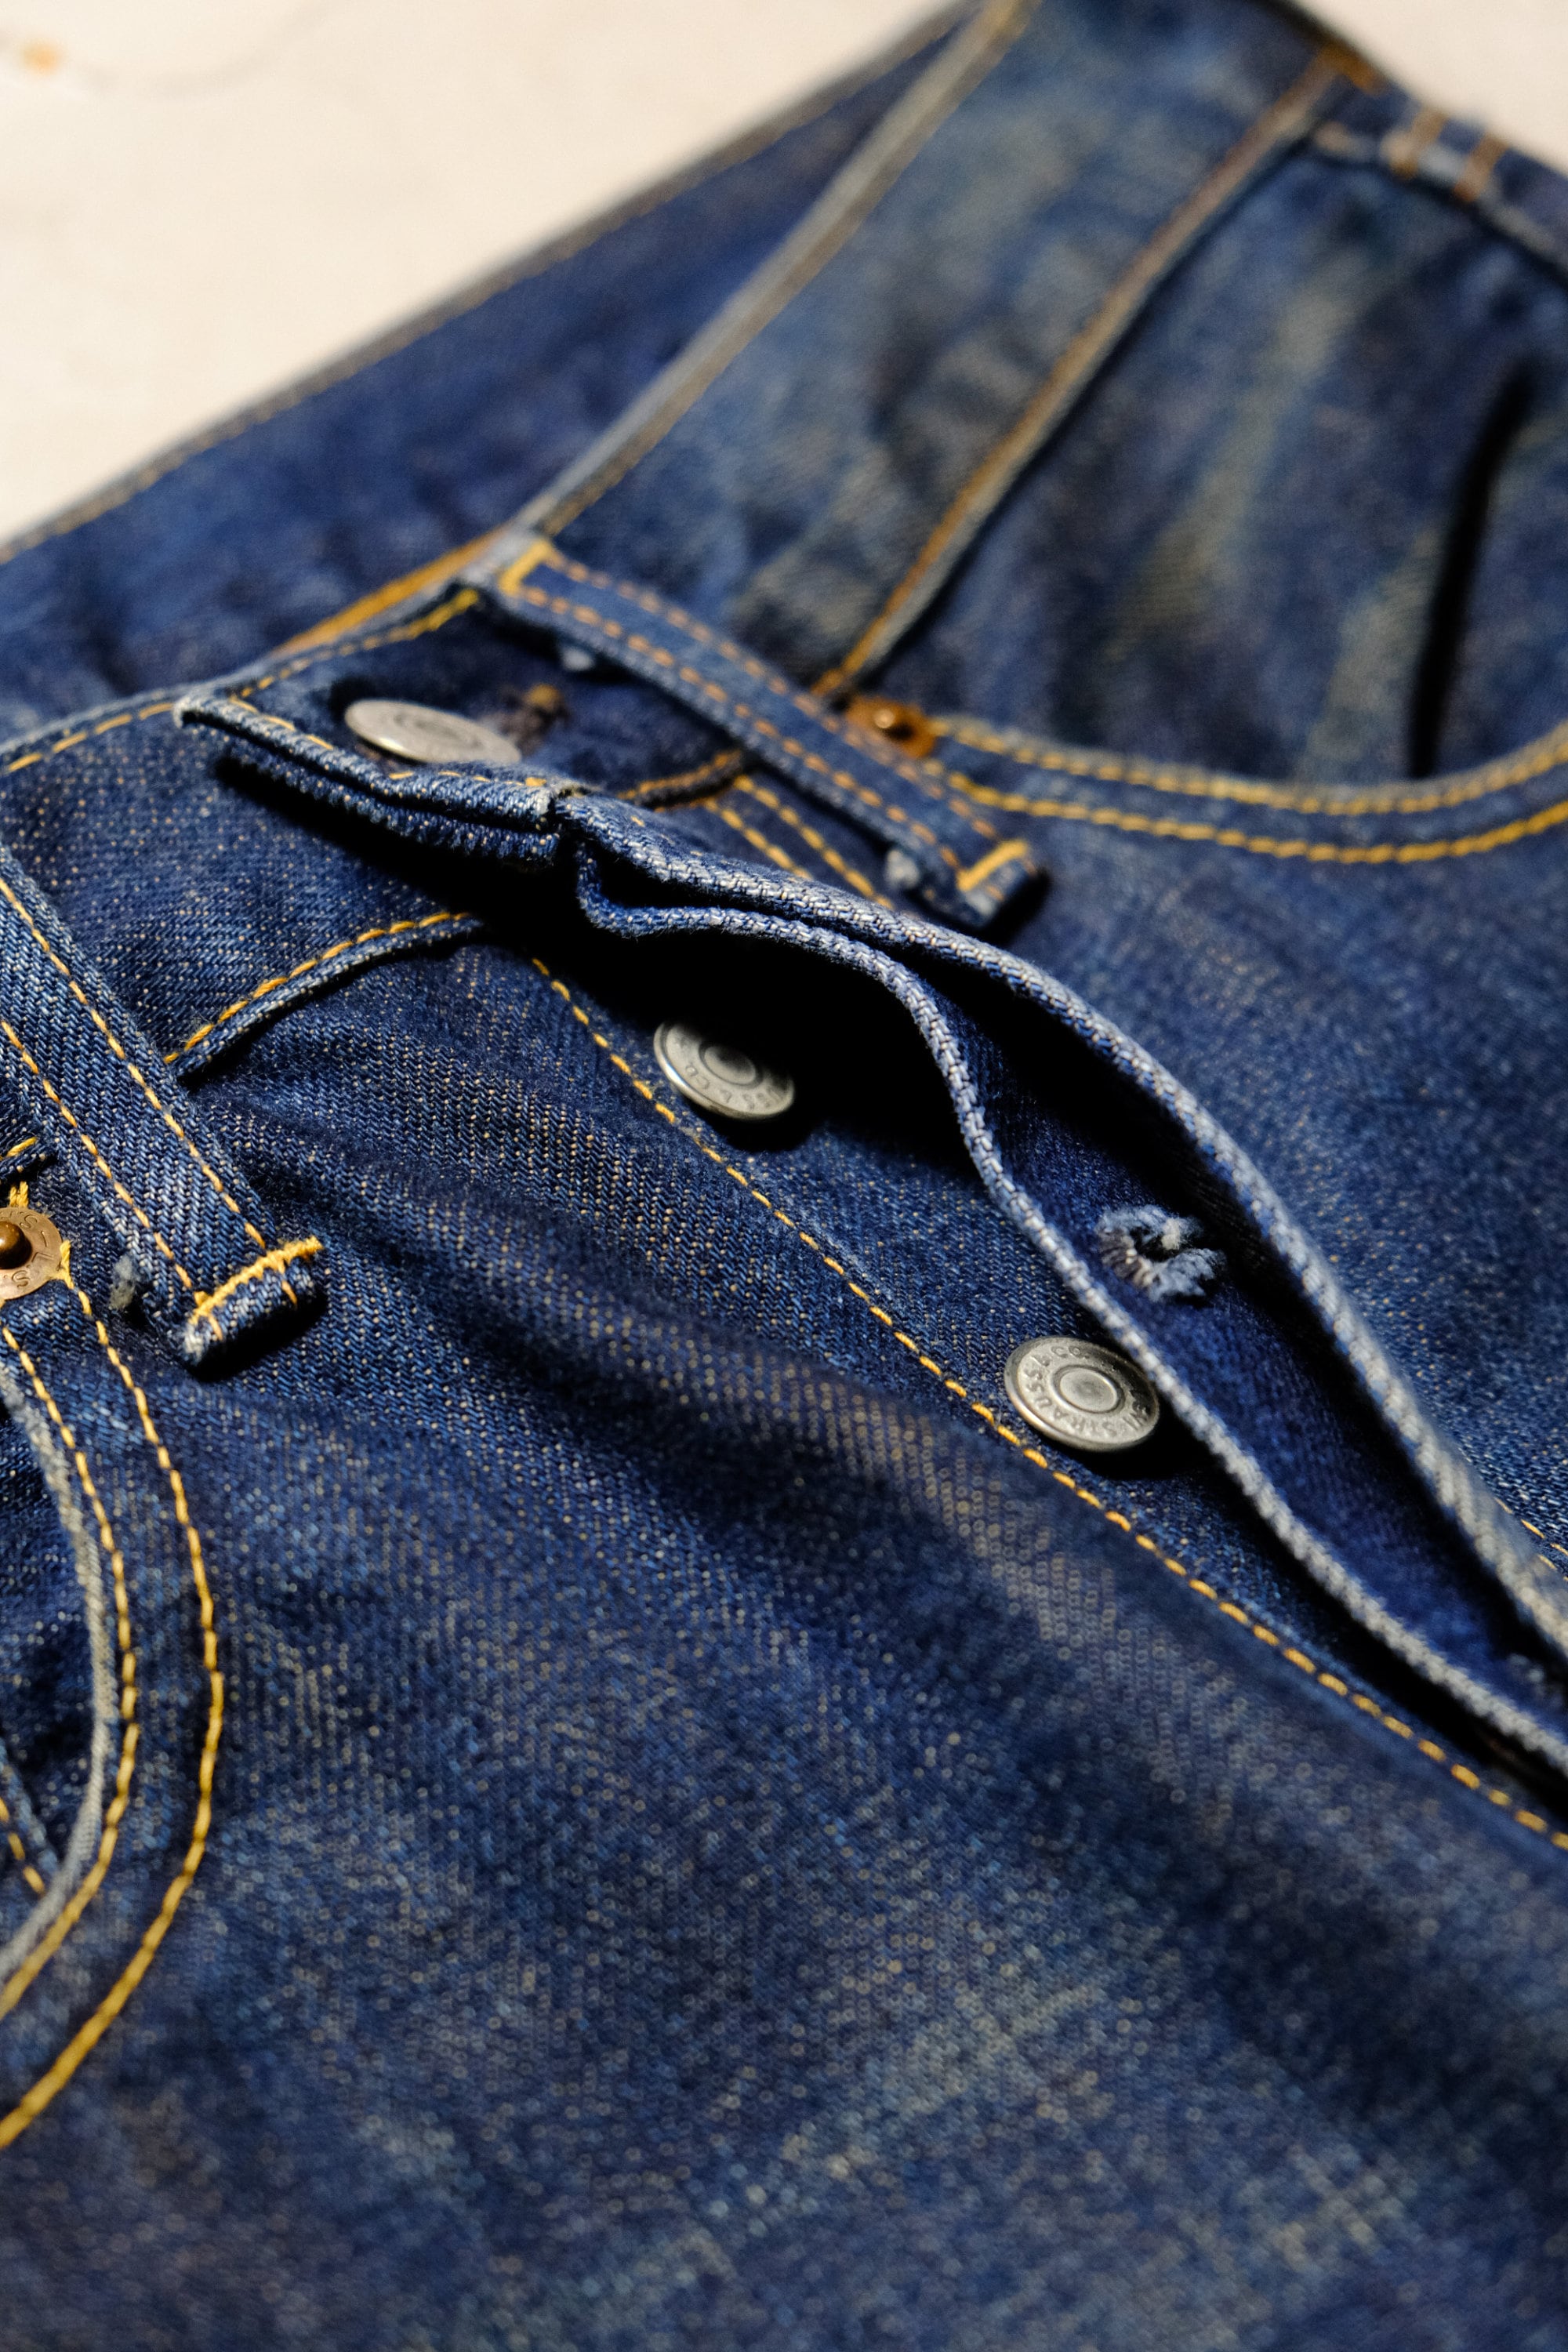 LVC Levis Vintage Clothing 66501 Big E Denim Jeans - Etsy